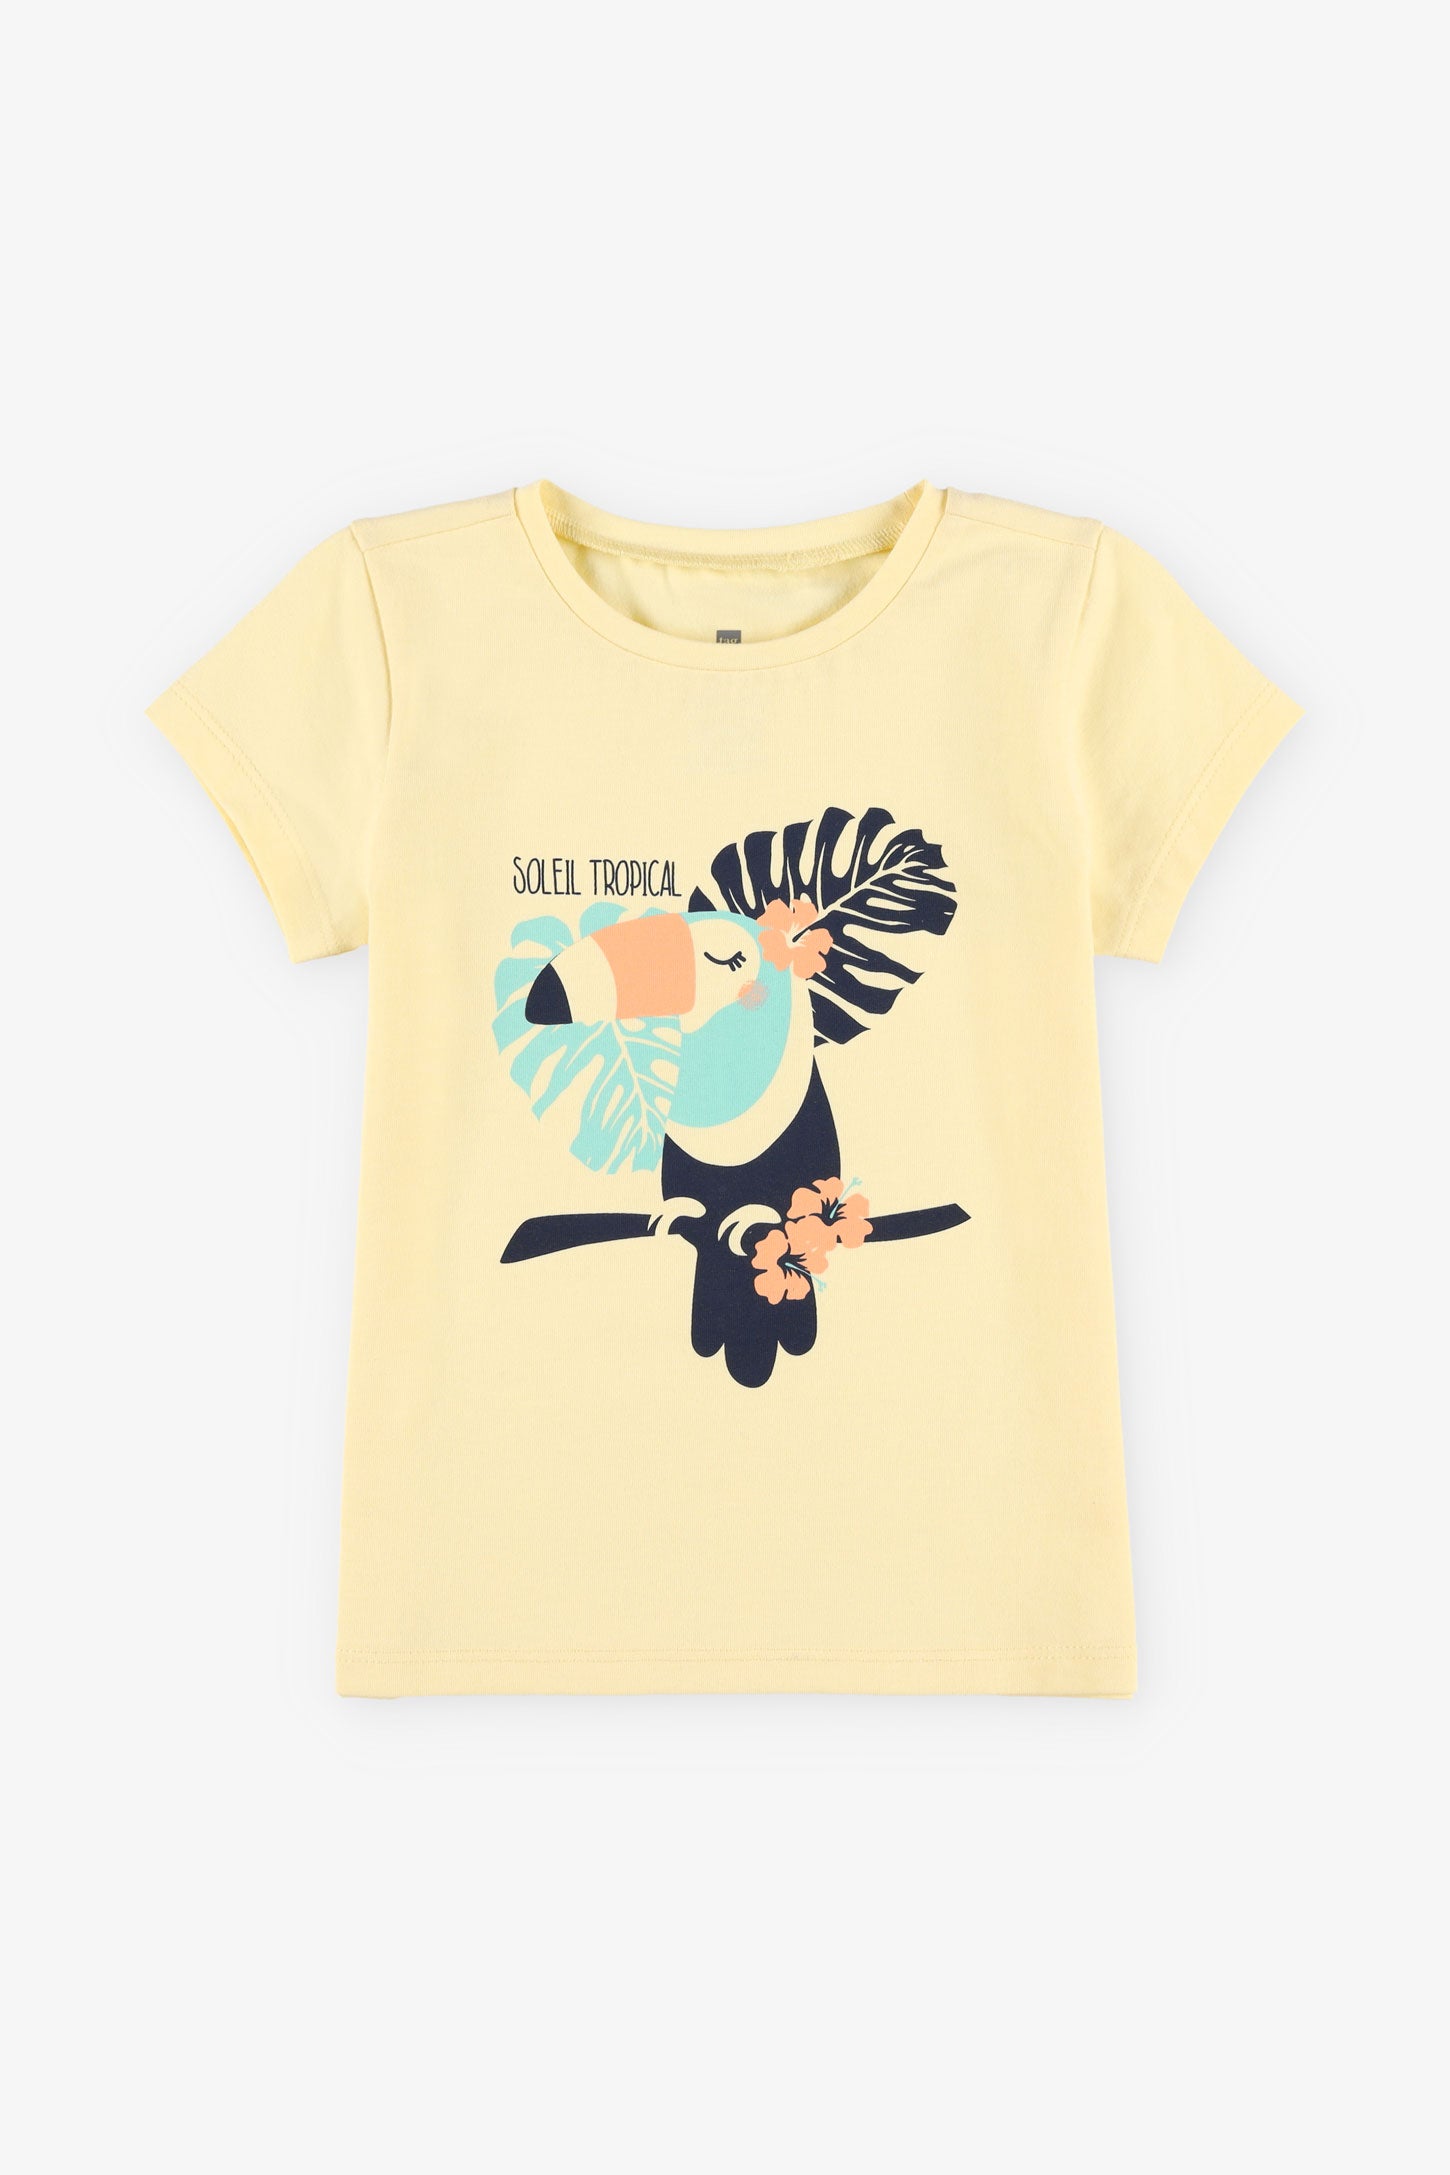 T-shirt rond imprimé coton, 2/15$ - Bébé fille && JAUNE